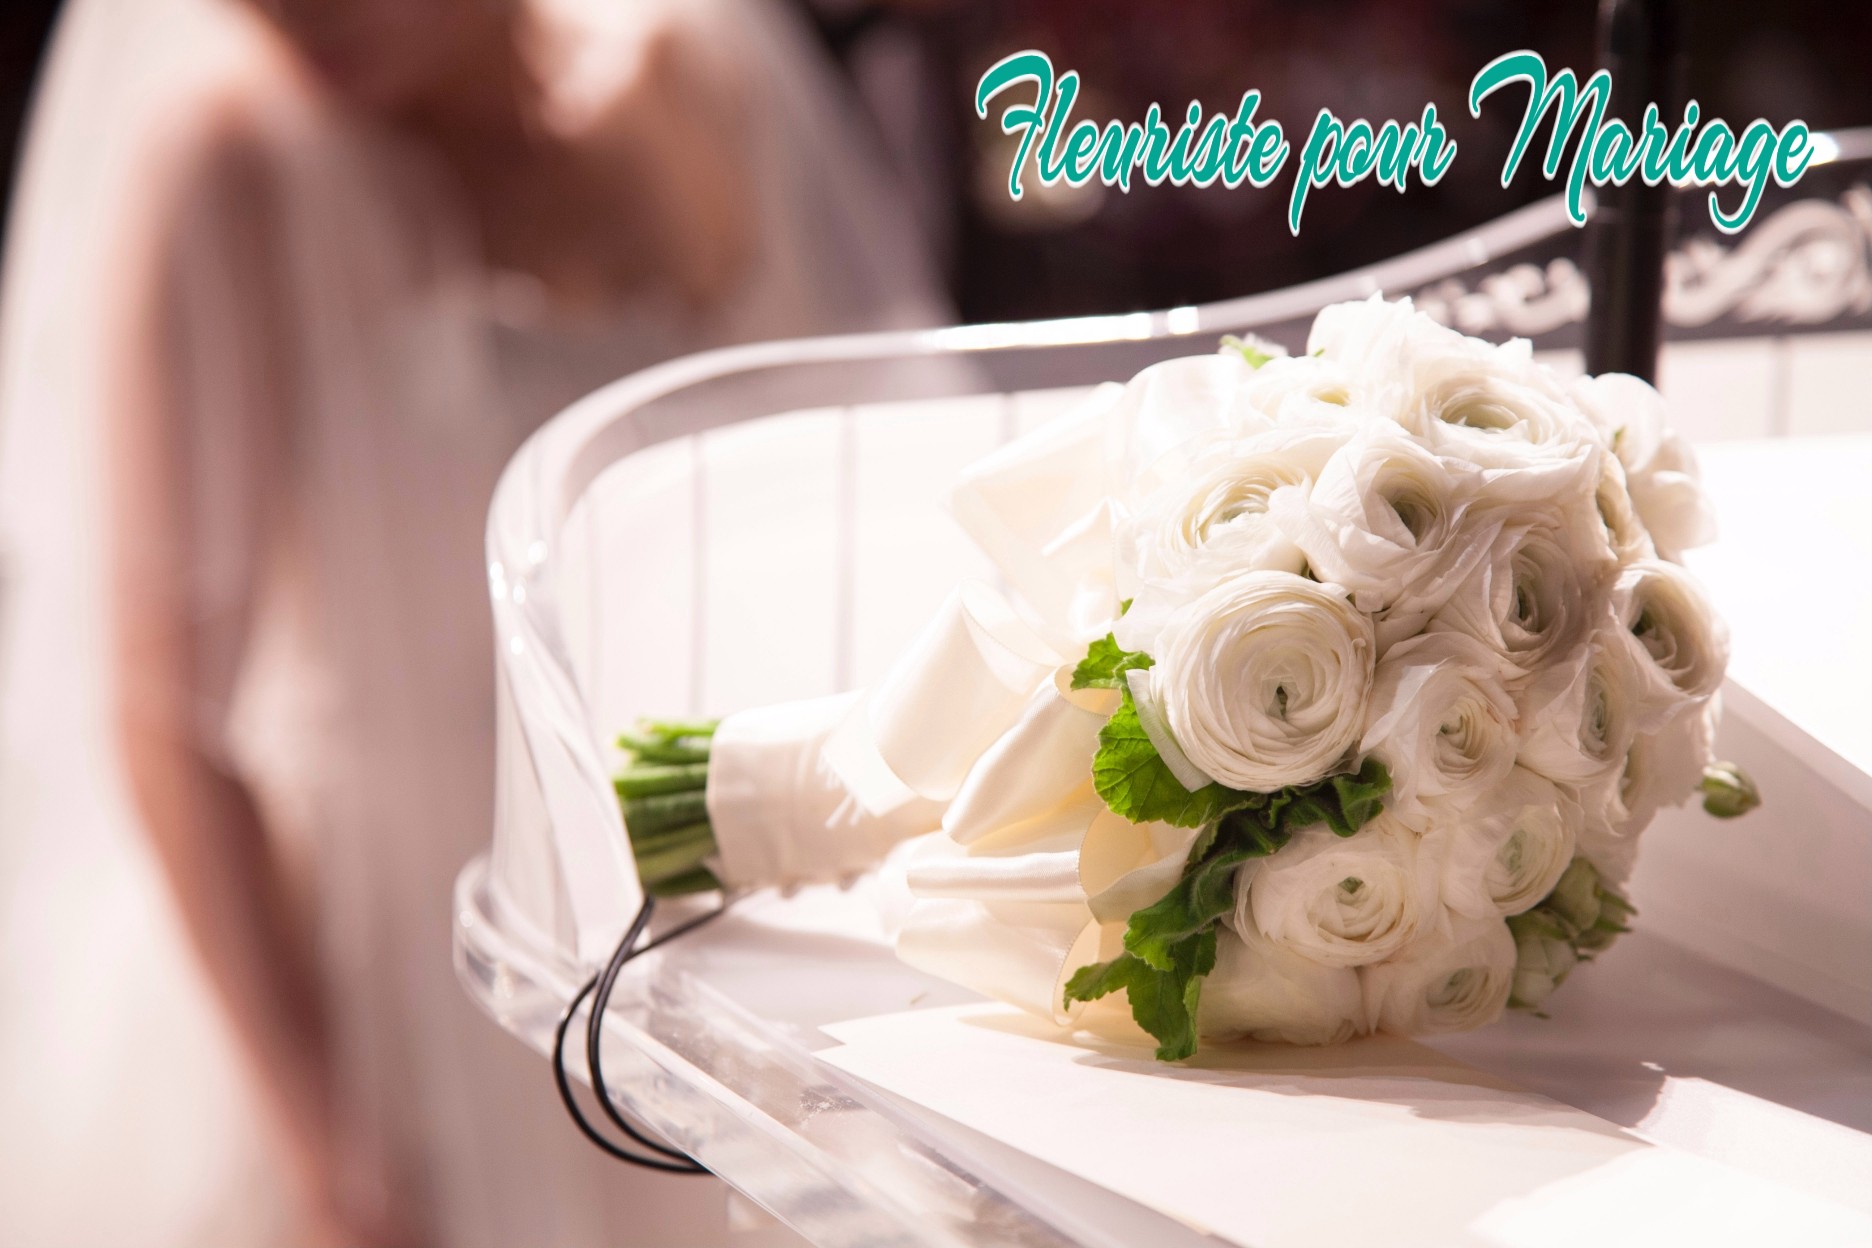 Fleuriste Mariage Cannes - Décoration florale de Mariages